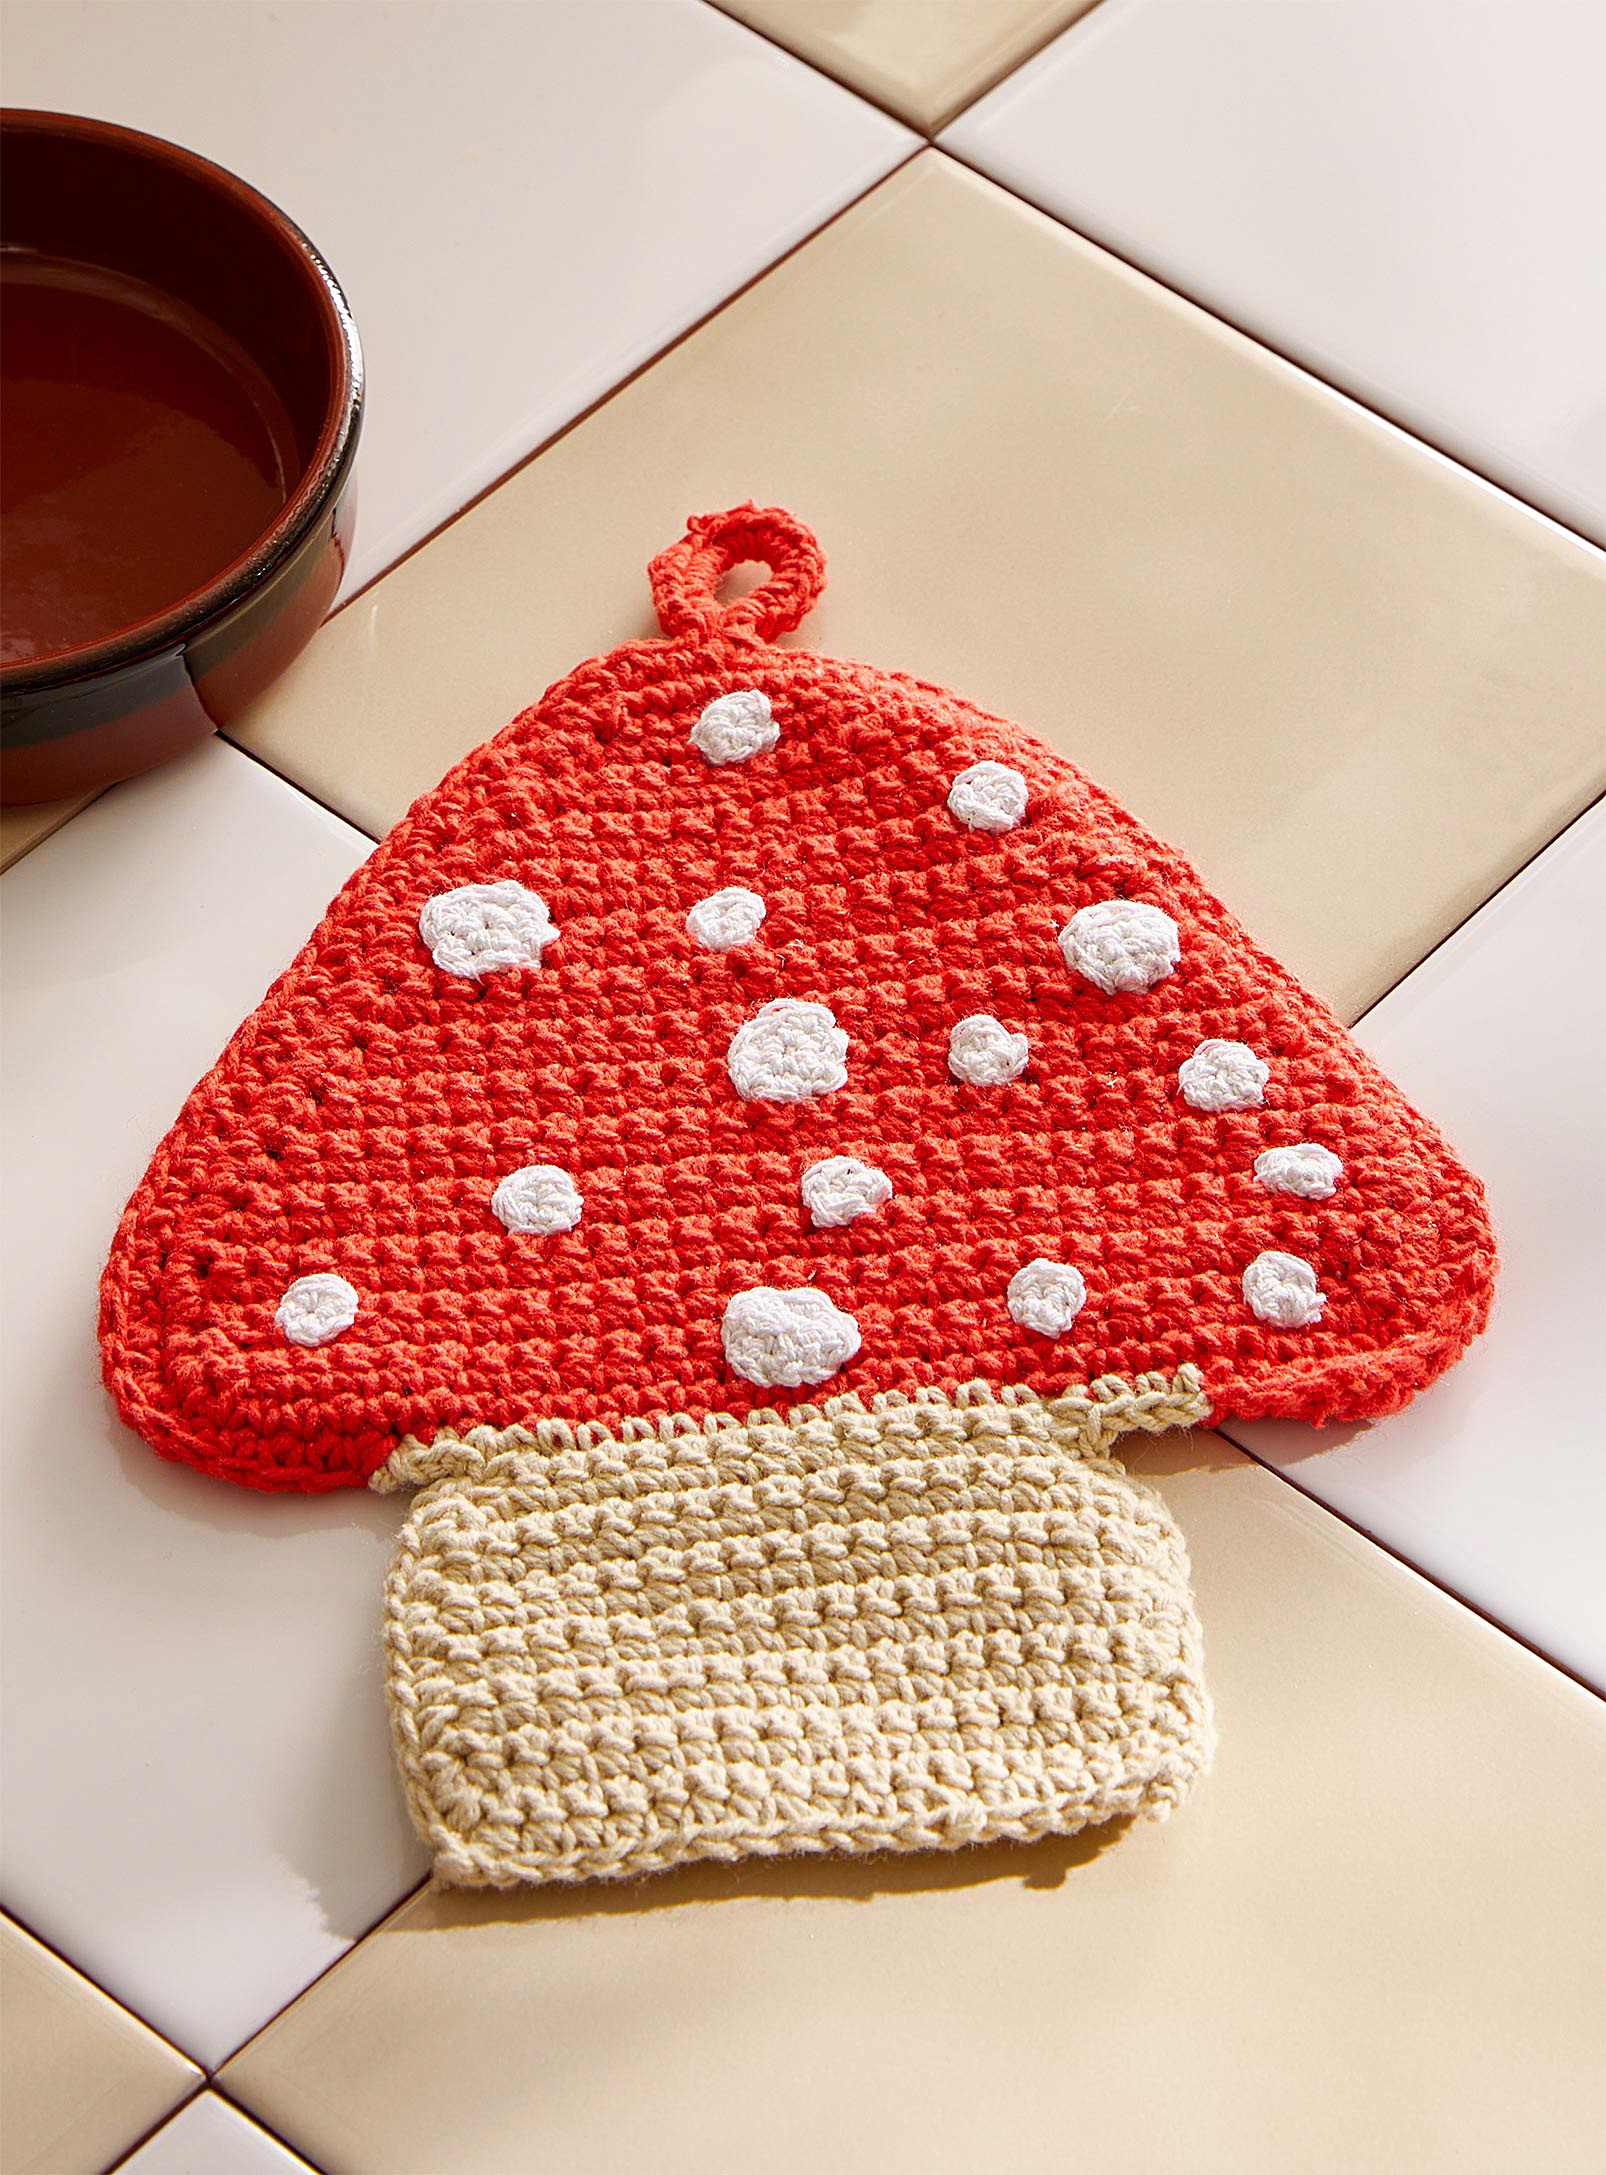 Danica Mushroom Crocheted Trivet 17 X 20 Cm In Red